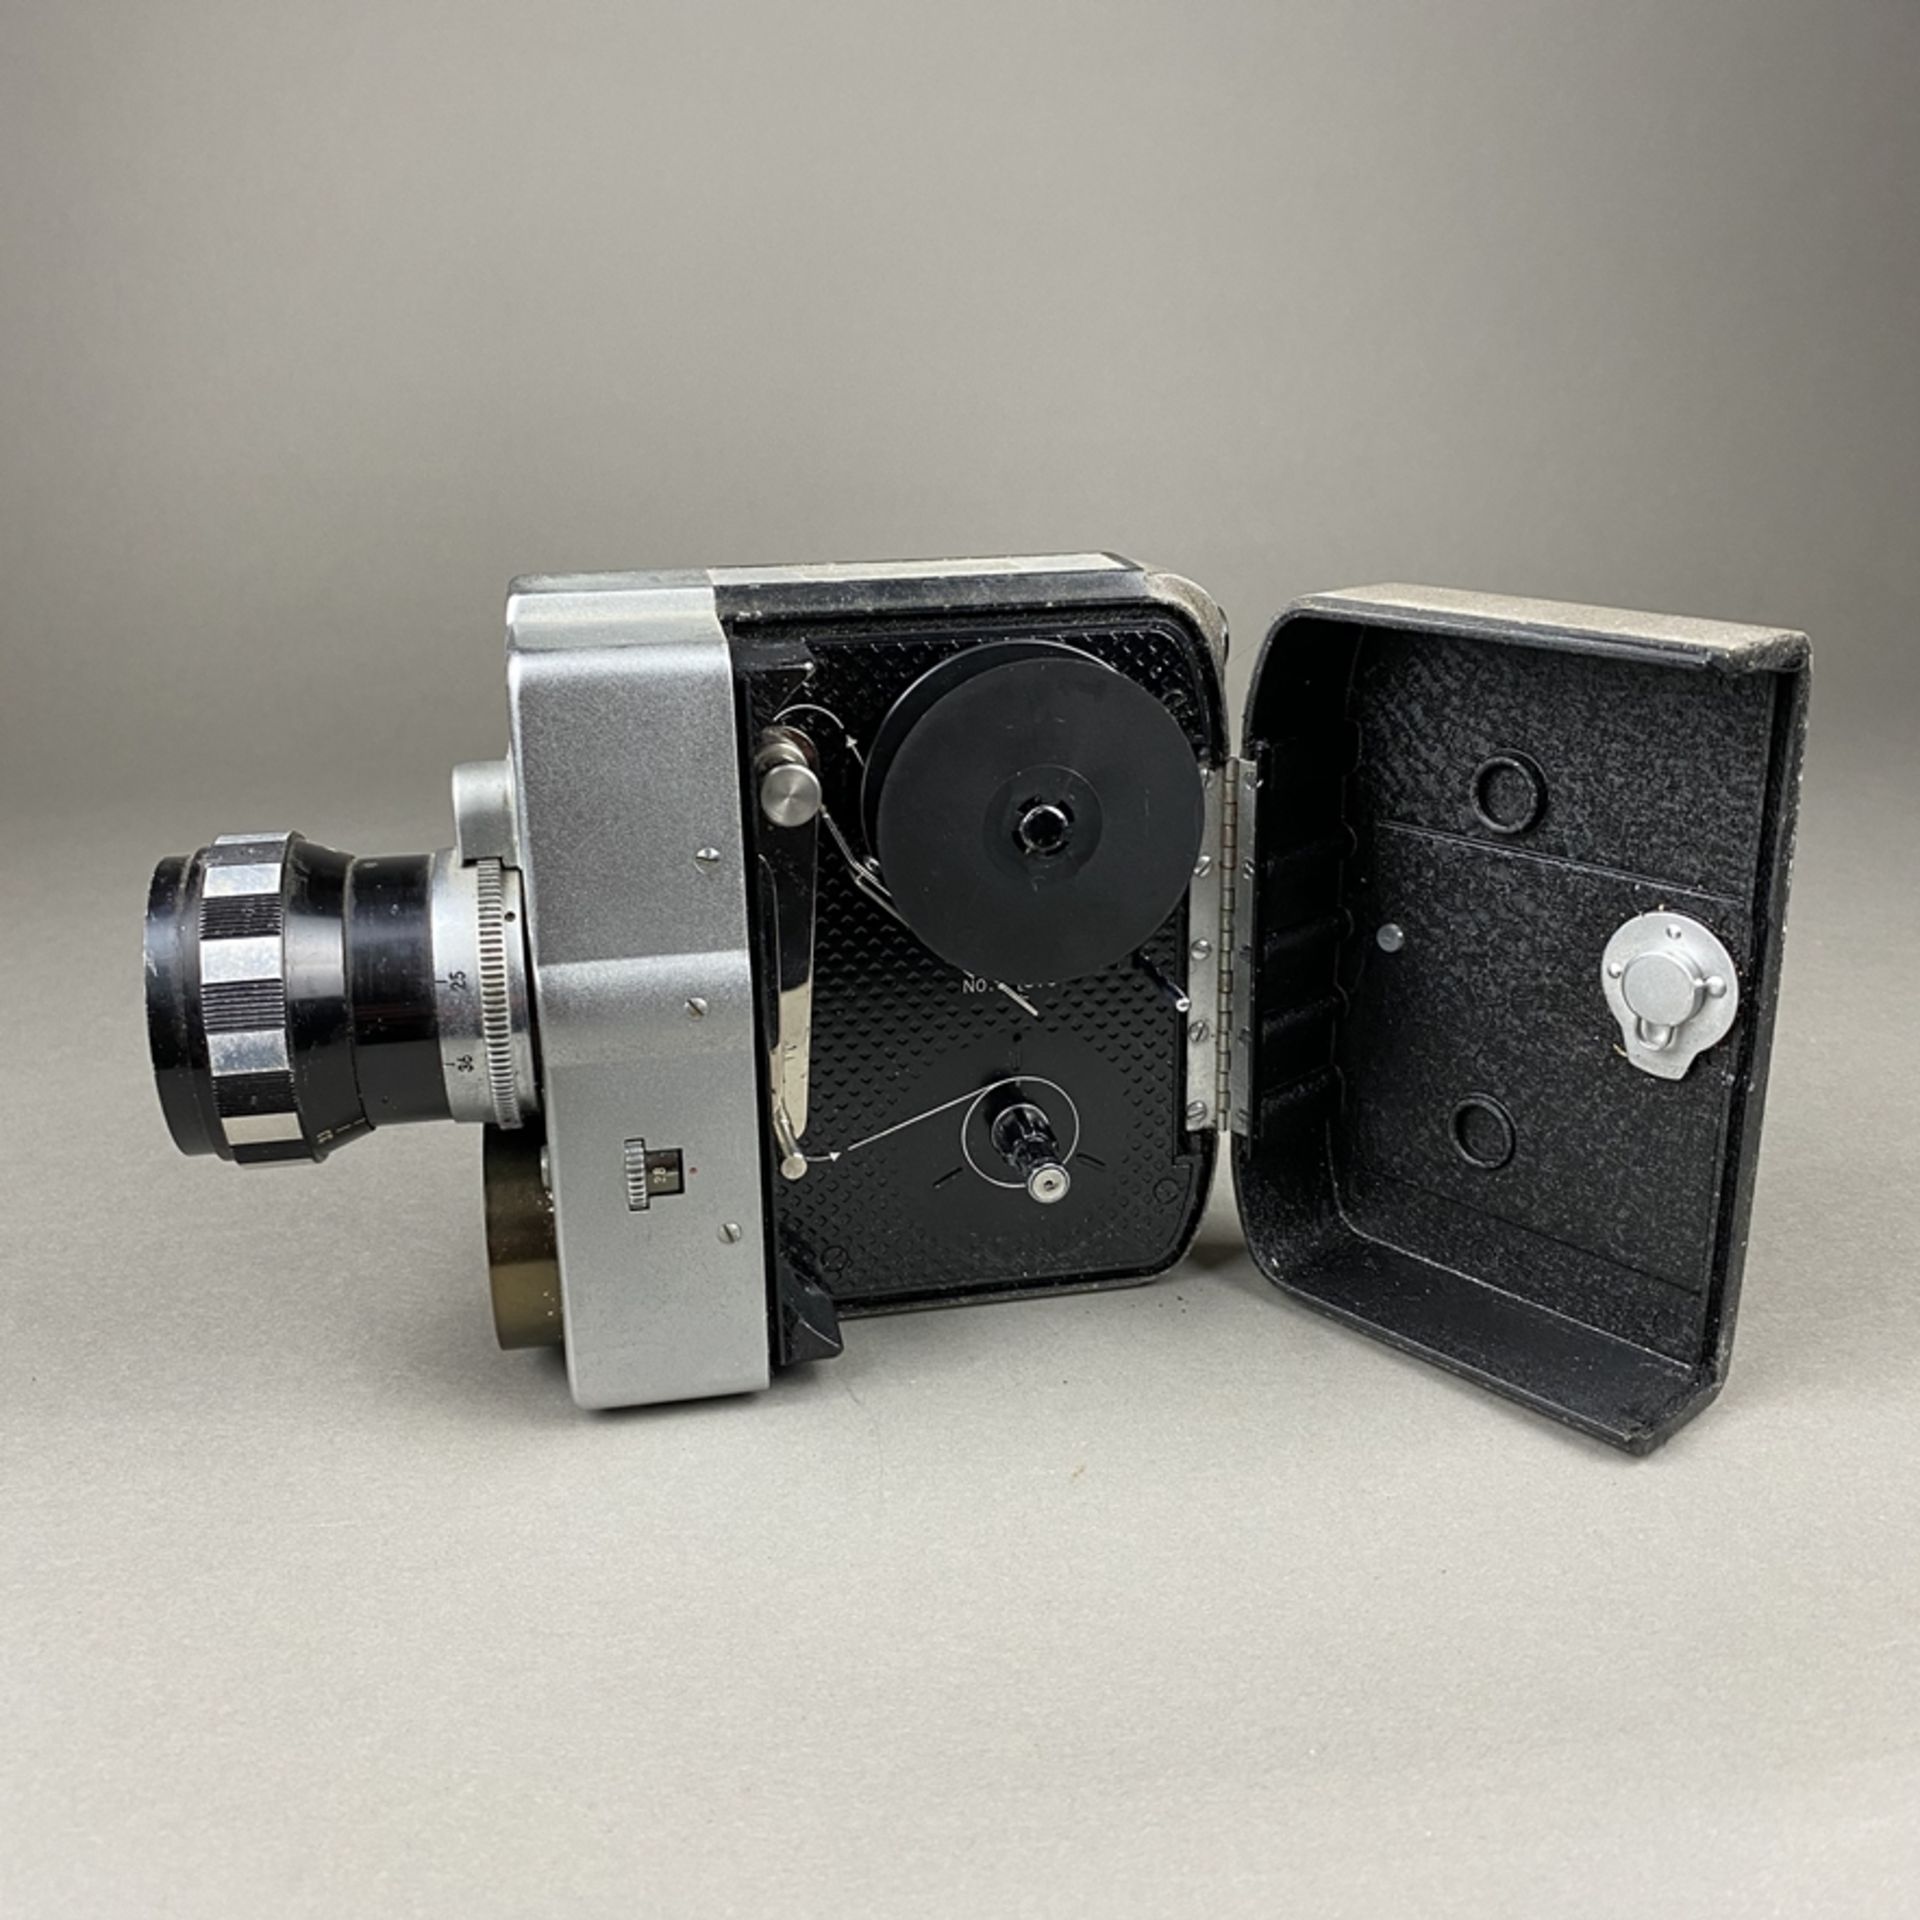 Vintage Filmkamera Zoomicon 8 - STK, Japan, Metallgehäuse, 1959/60, Objektiv Zoomicor / Zoom, f=9- - Bild 7 aus 8